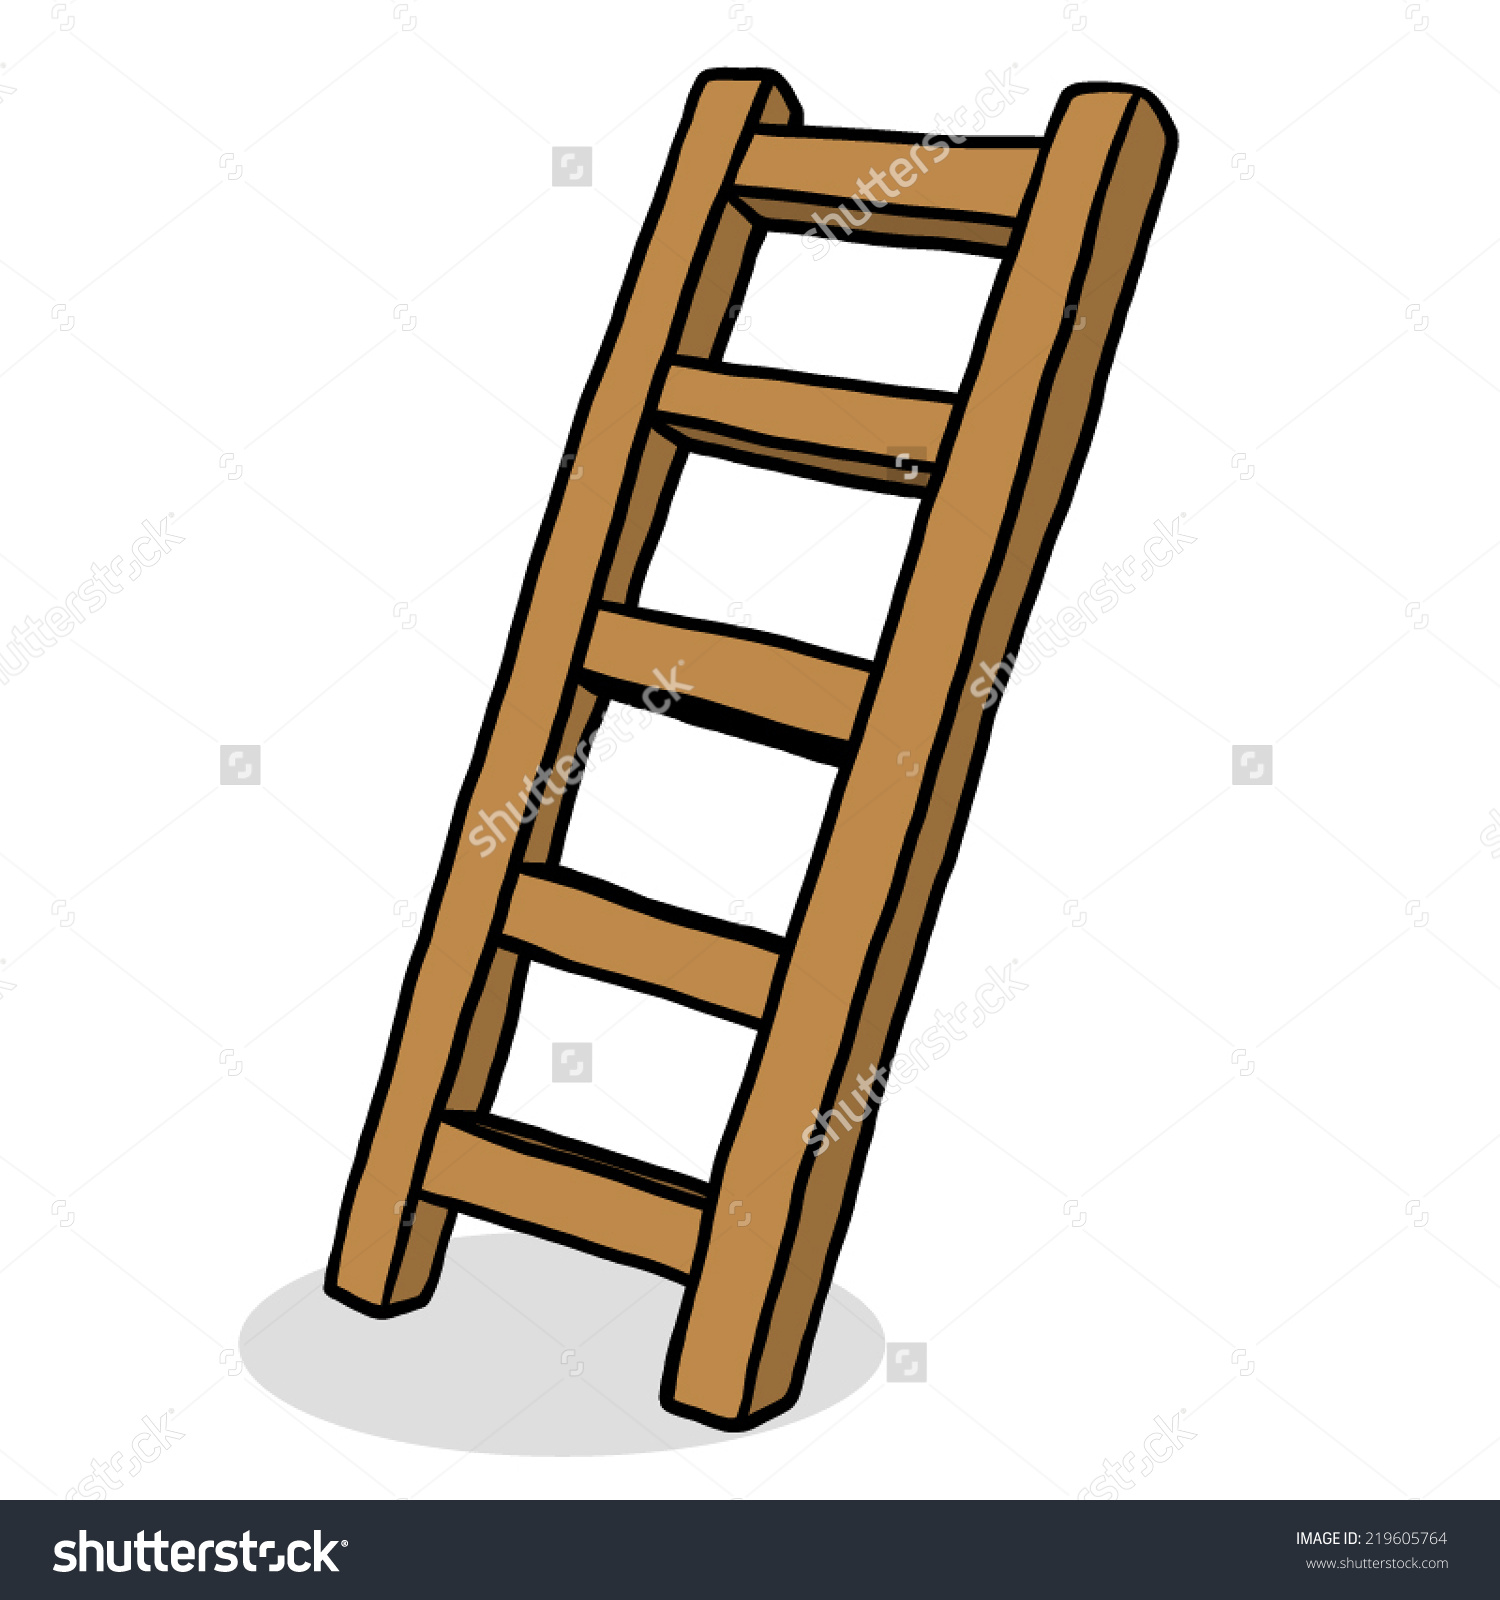 Wooden Ladder Stair Cartoon Vector Illustration Stock Vector.